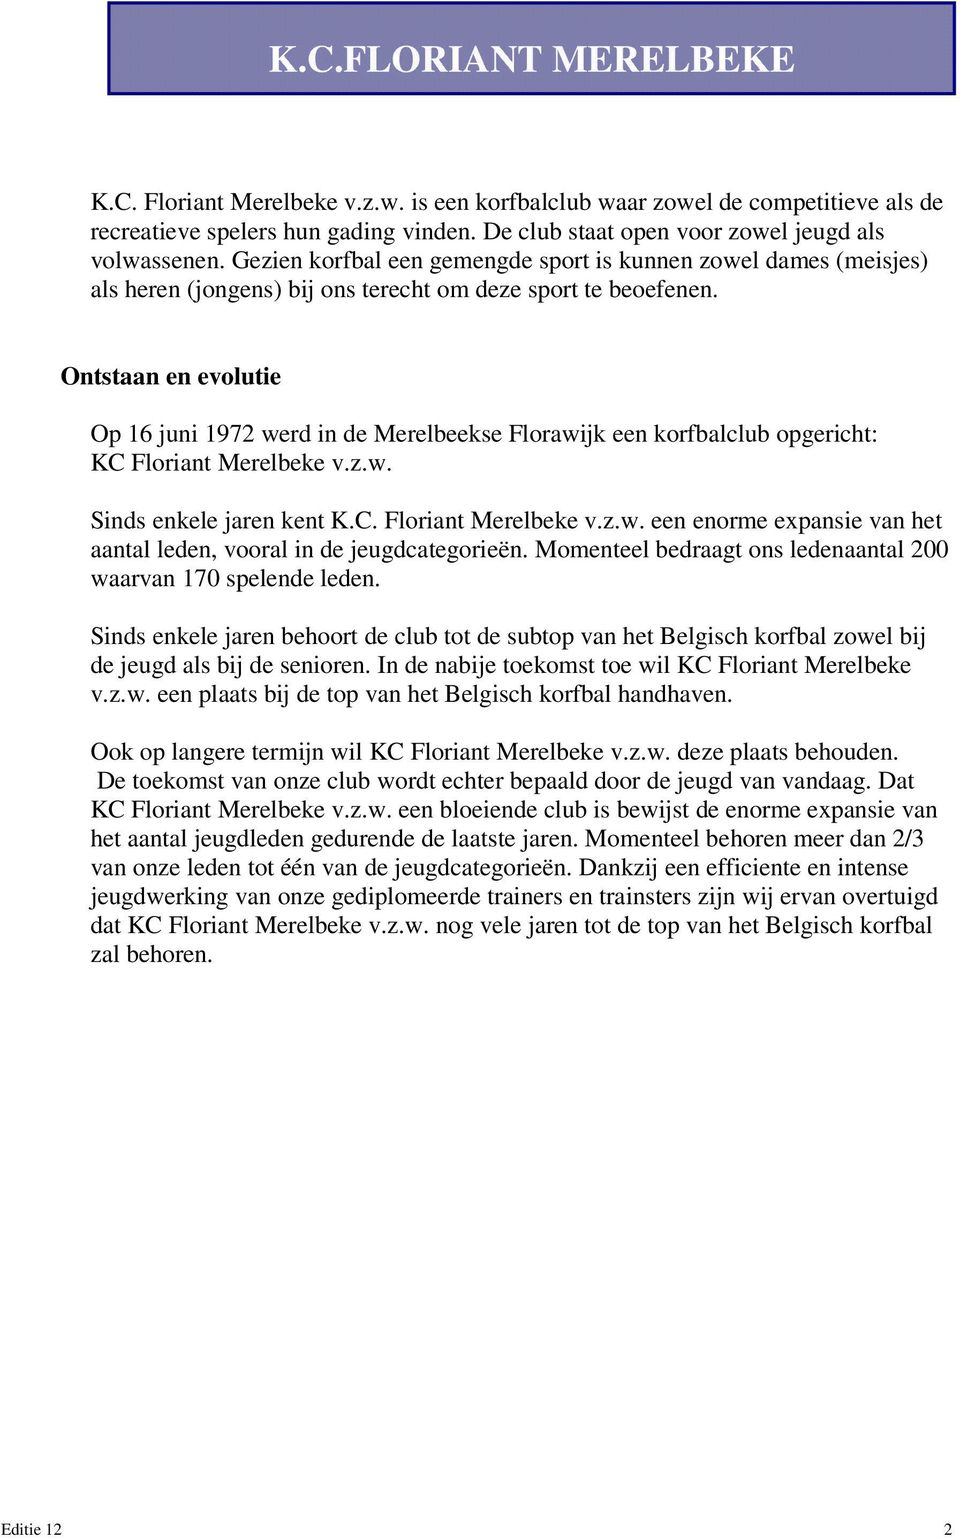 Ontstaan en evolutie Op 16 juni 1972 werd in de Merelbeekse Florawijk een korfbalclub opgericht: KC Floriant Merelbeke v.z.w. Sinds enkele jaren kent K.C. Floriant Merelbeke v.z.w. een enorme expansie van het aantal leden, vooral in de jeugdcategorieën.